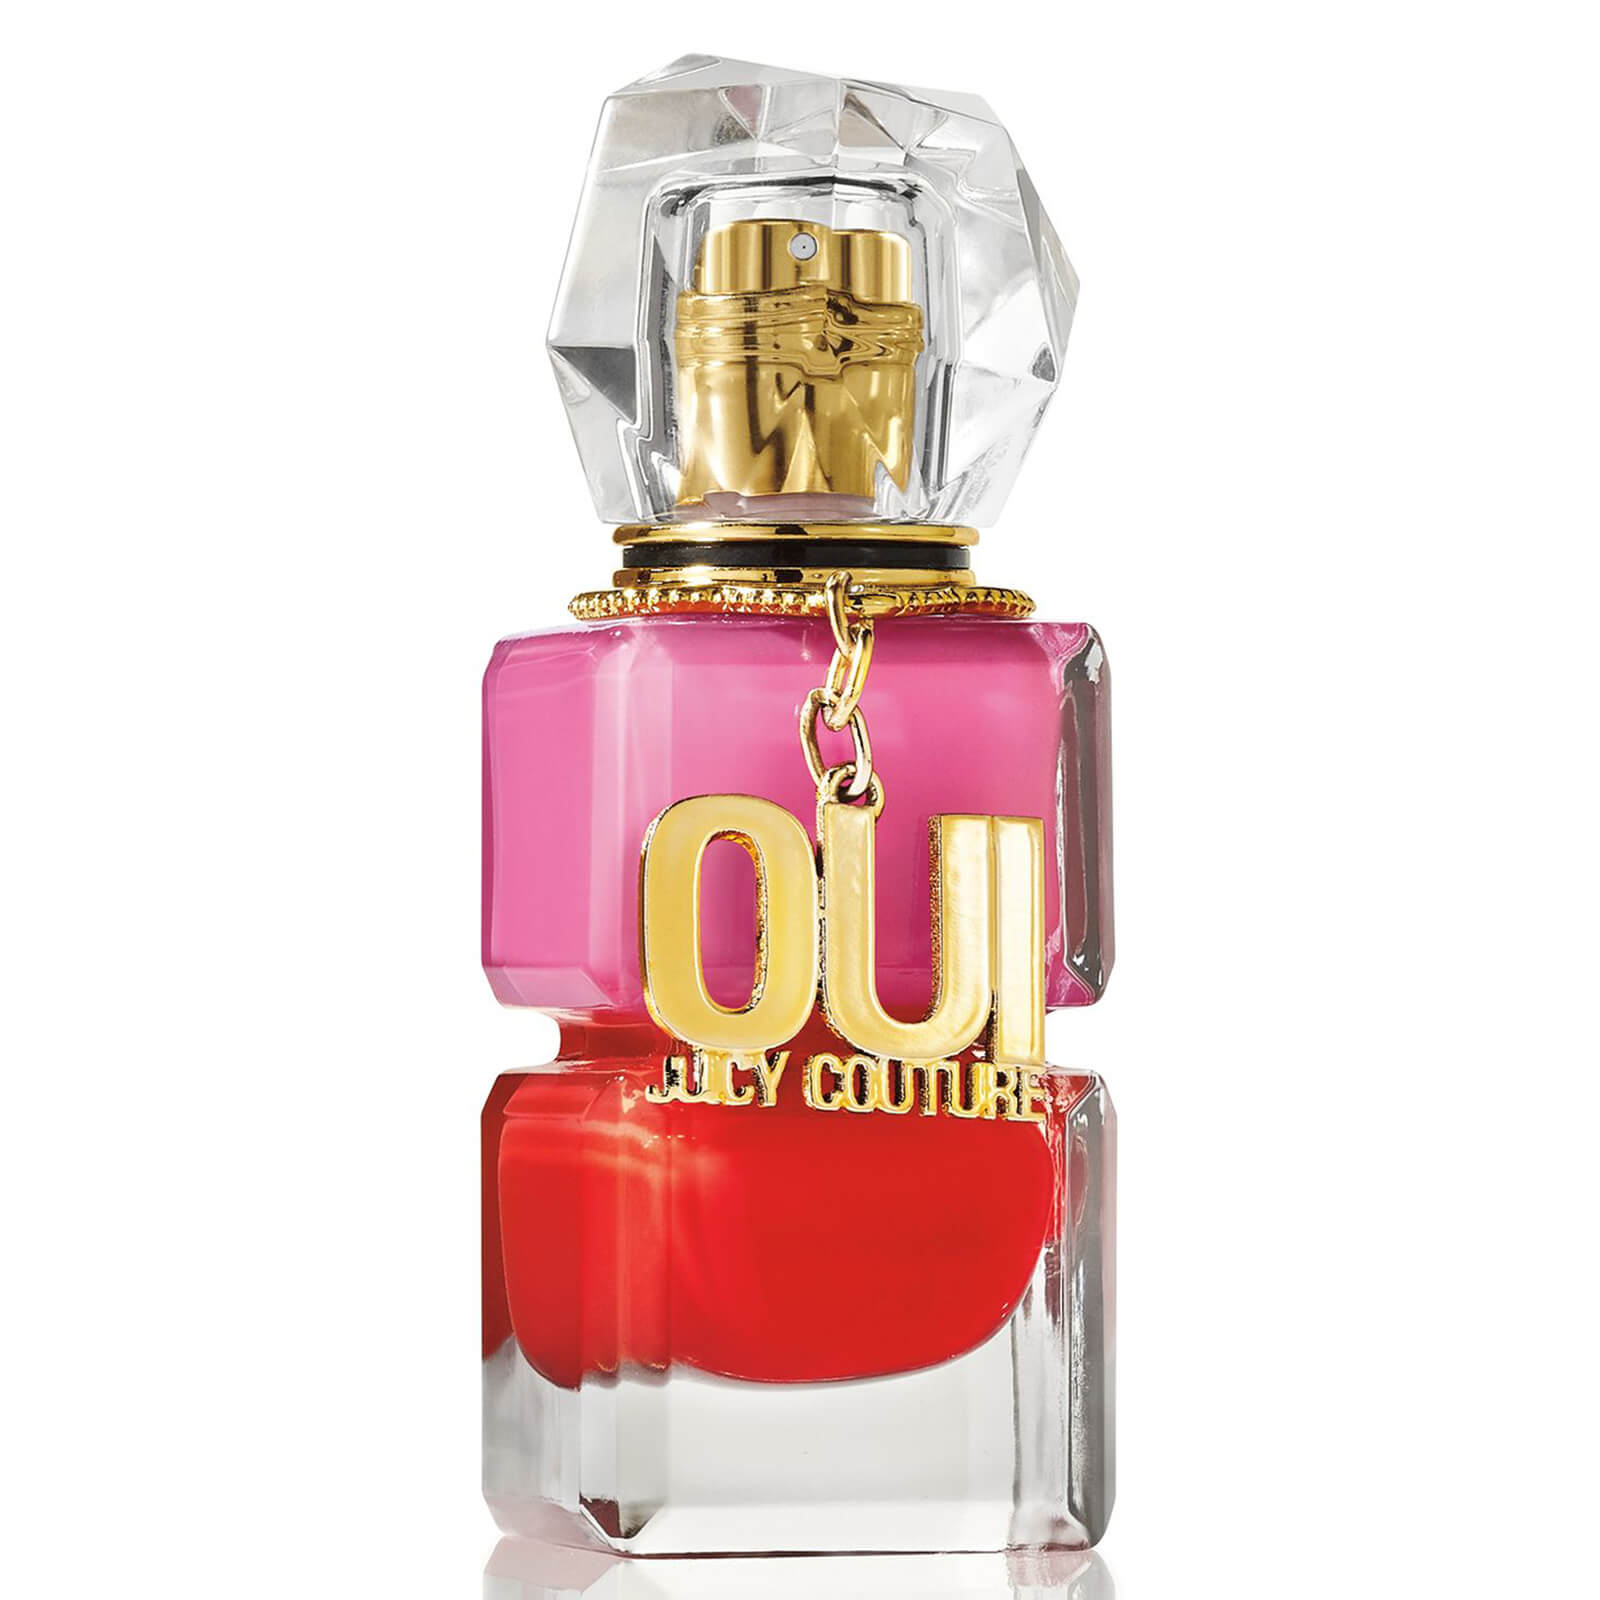 Photos - Women's Fragrance Juicy Couture Oui  Eau de Parfum - 30ml A0115019 